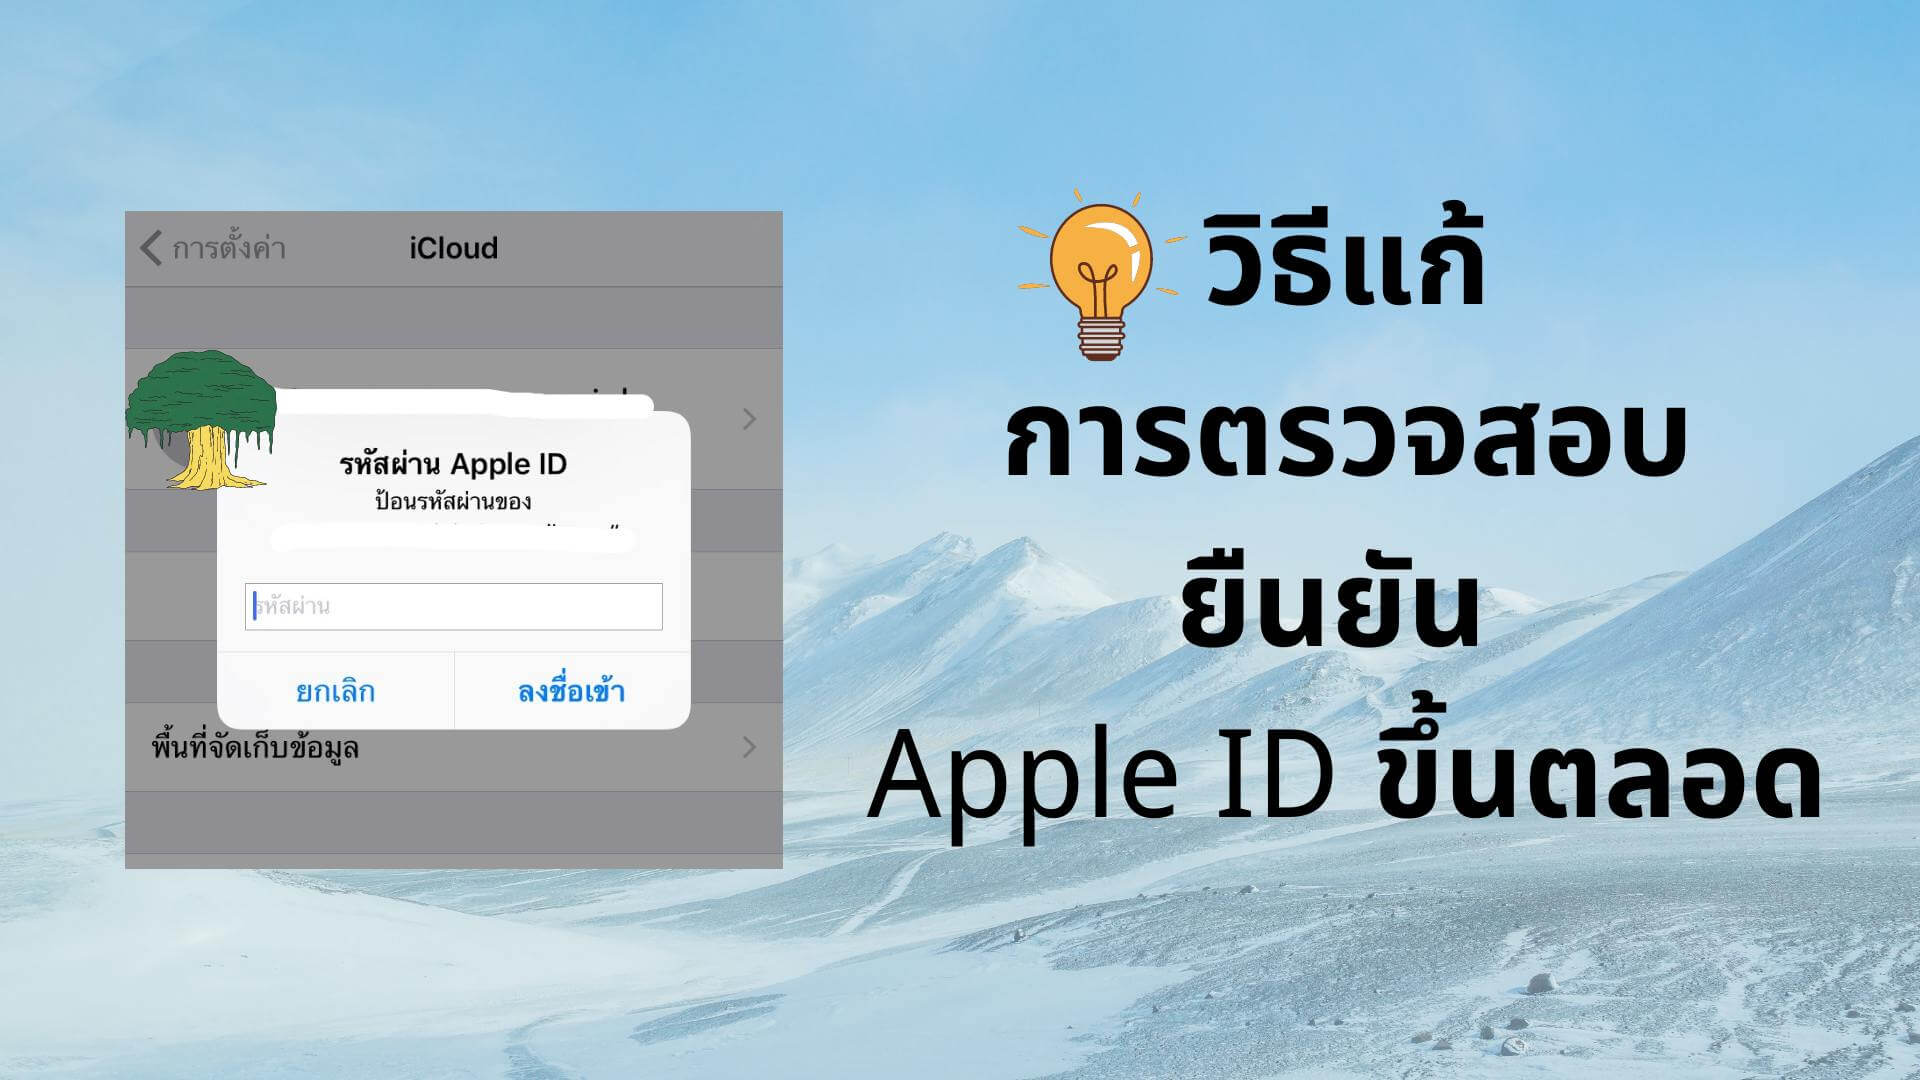 【แก้ไขได้】วิธีแก้การตรวจสอบยืนยัน Apple ID ขึ้นตลอด